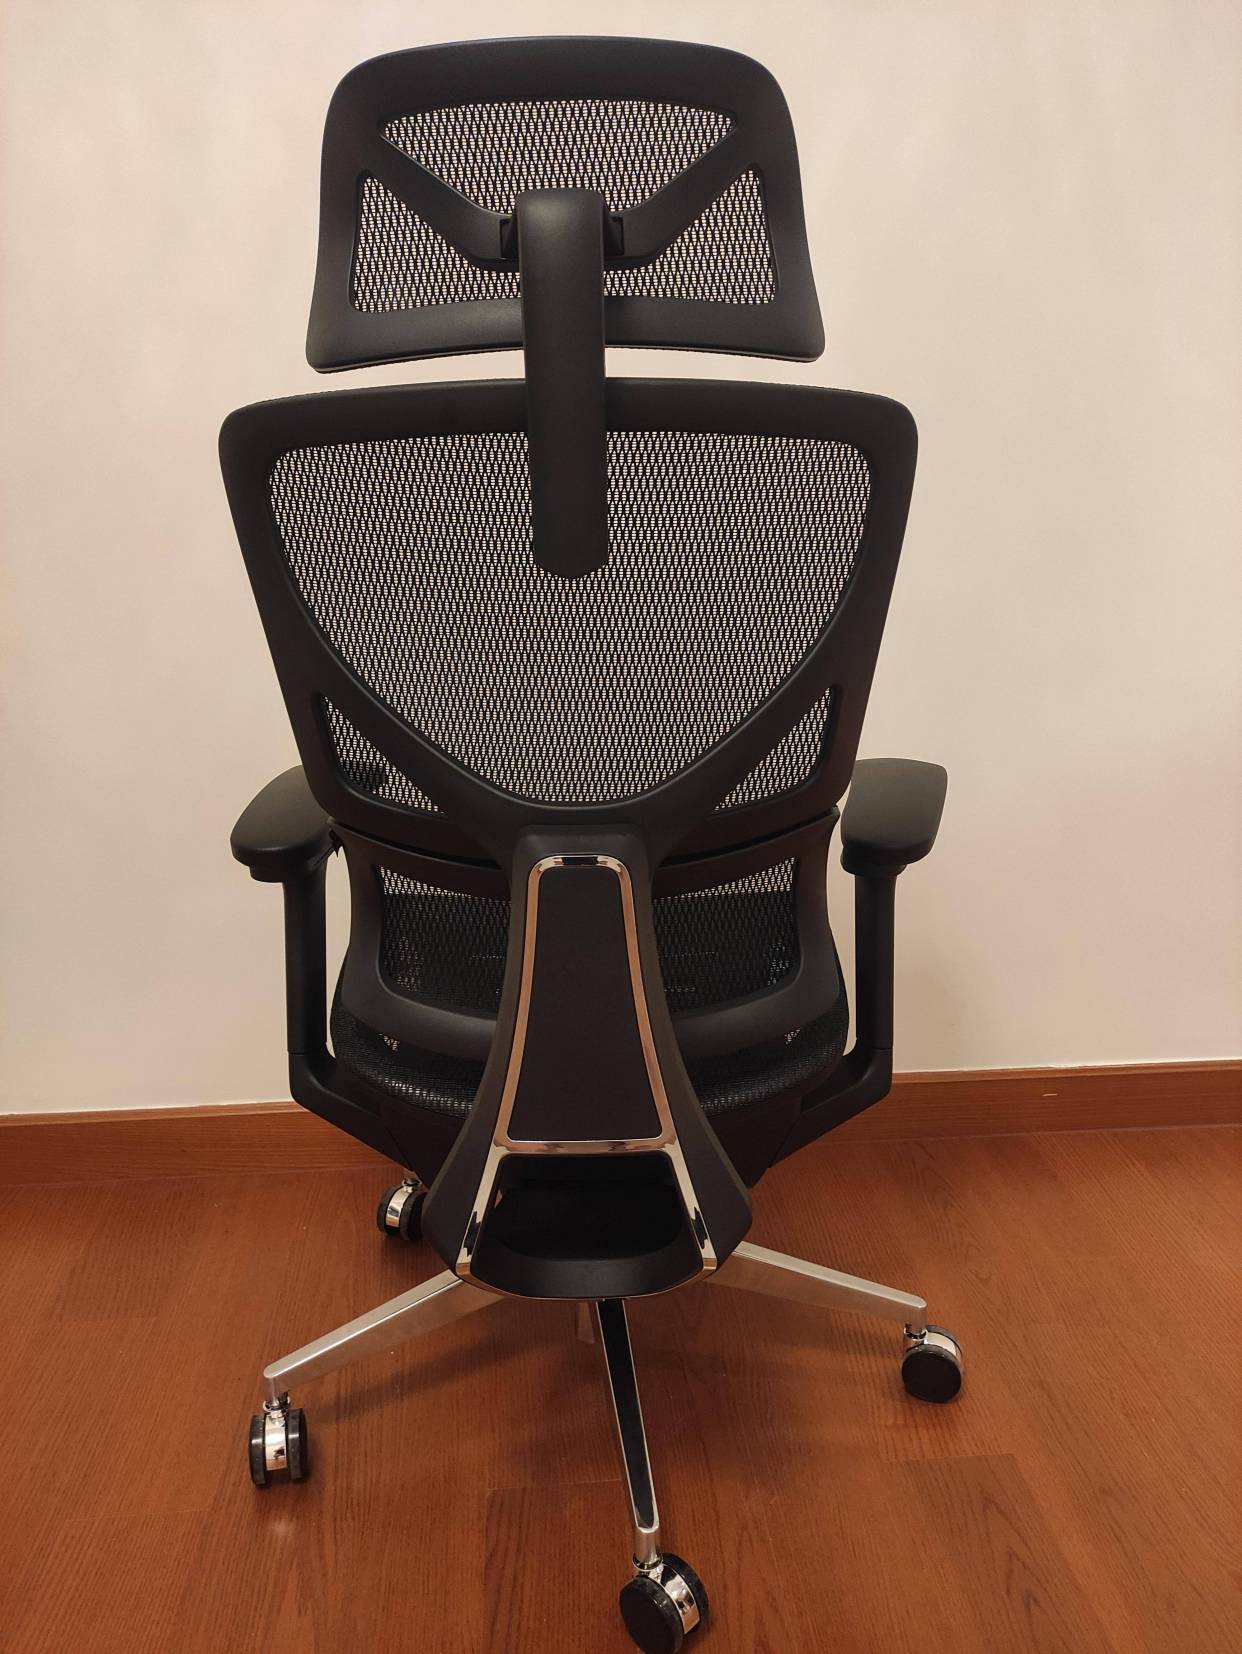 人体工学椅/办公椅怎么选?丨达宝利ergosmart人体工学椅实测